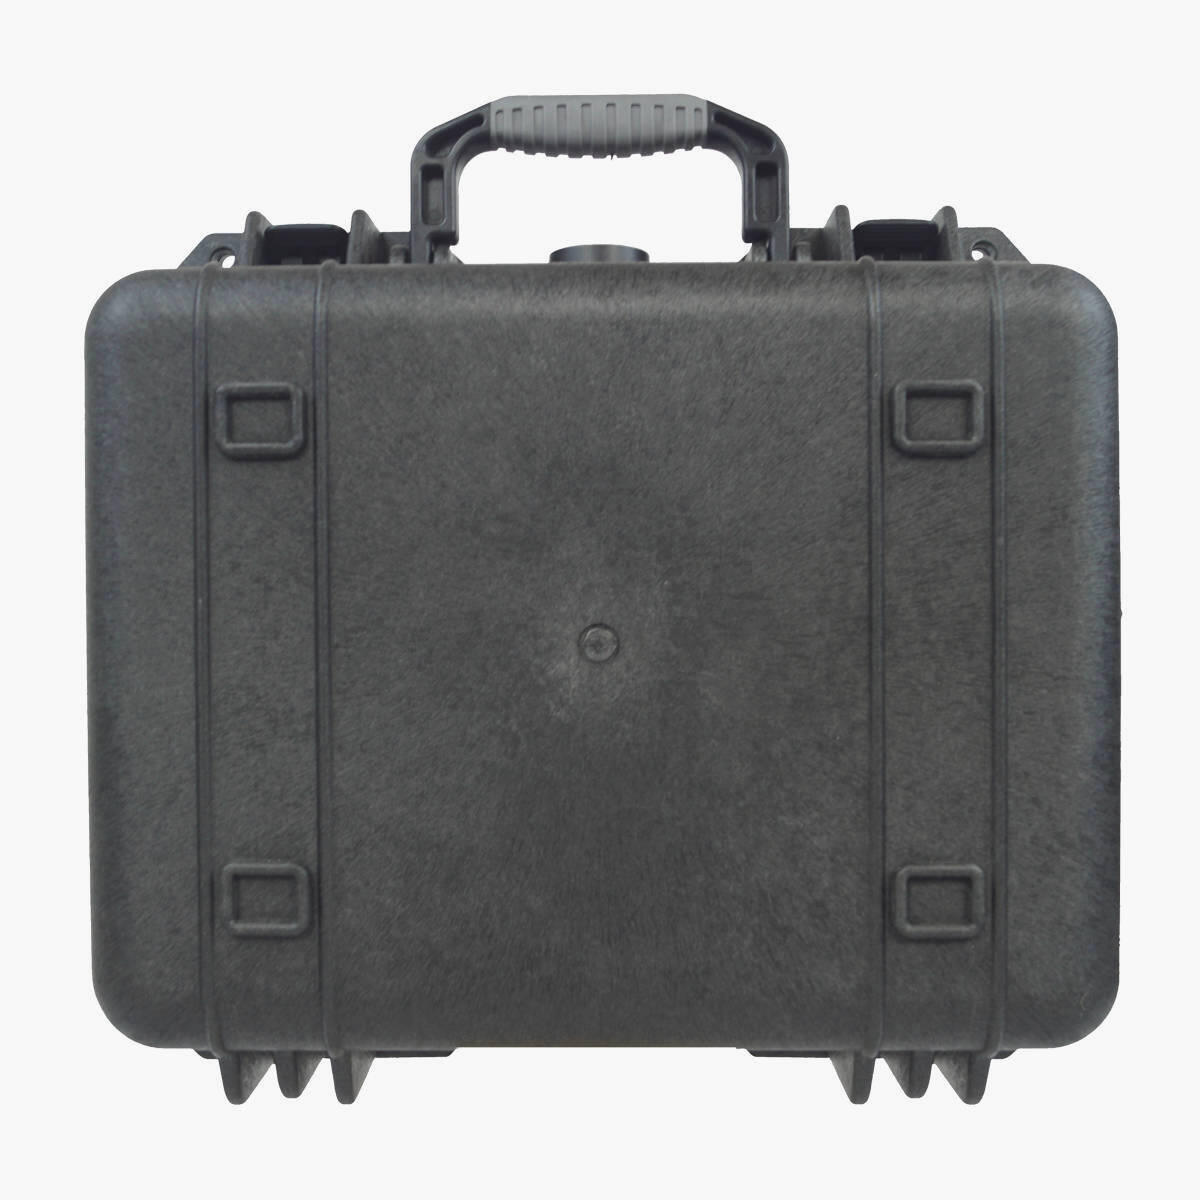 Lomo Centurion Dry Box - Medium - With Cubed Foam 5/7